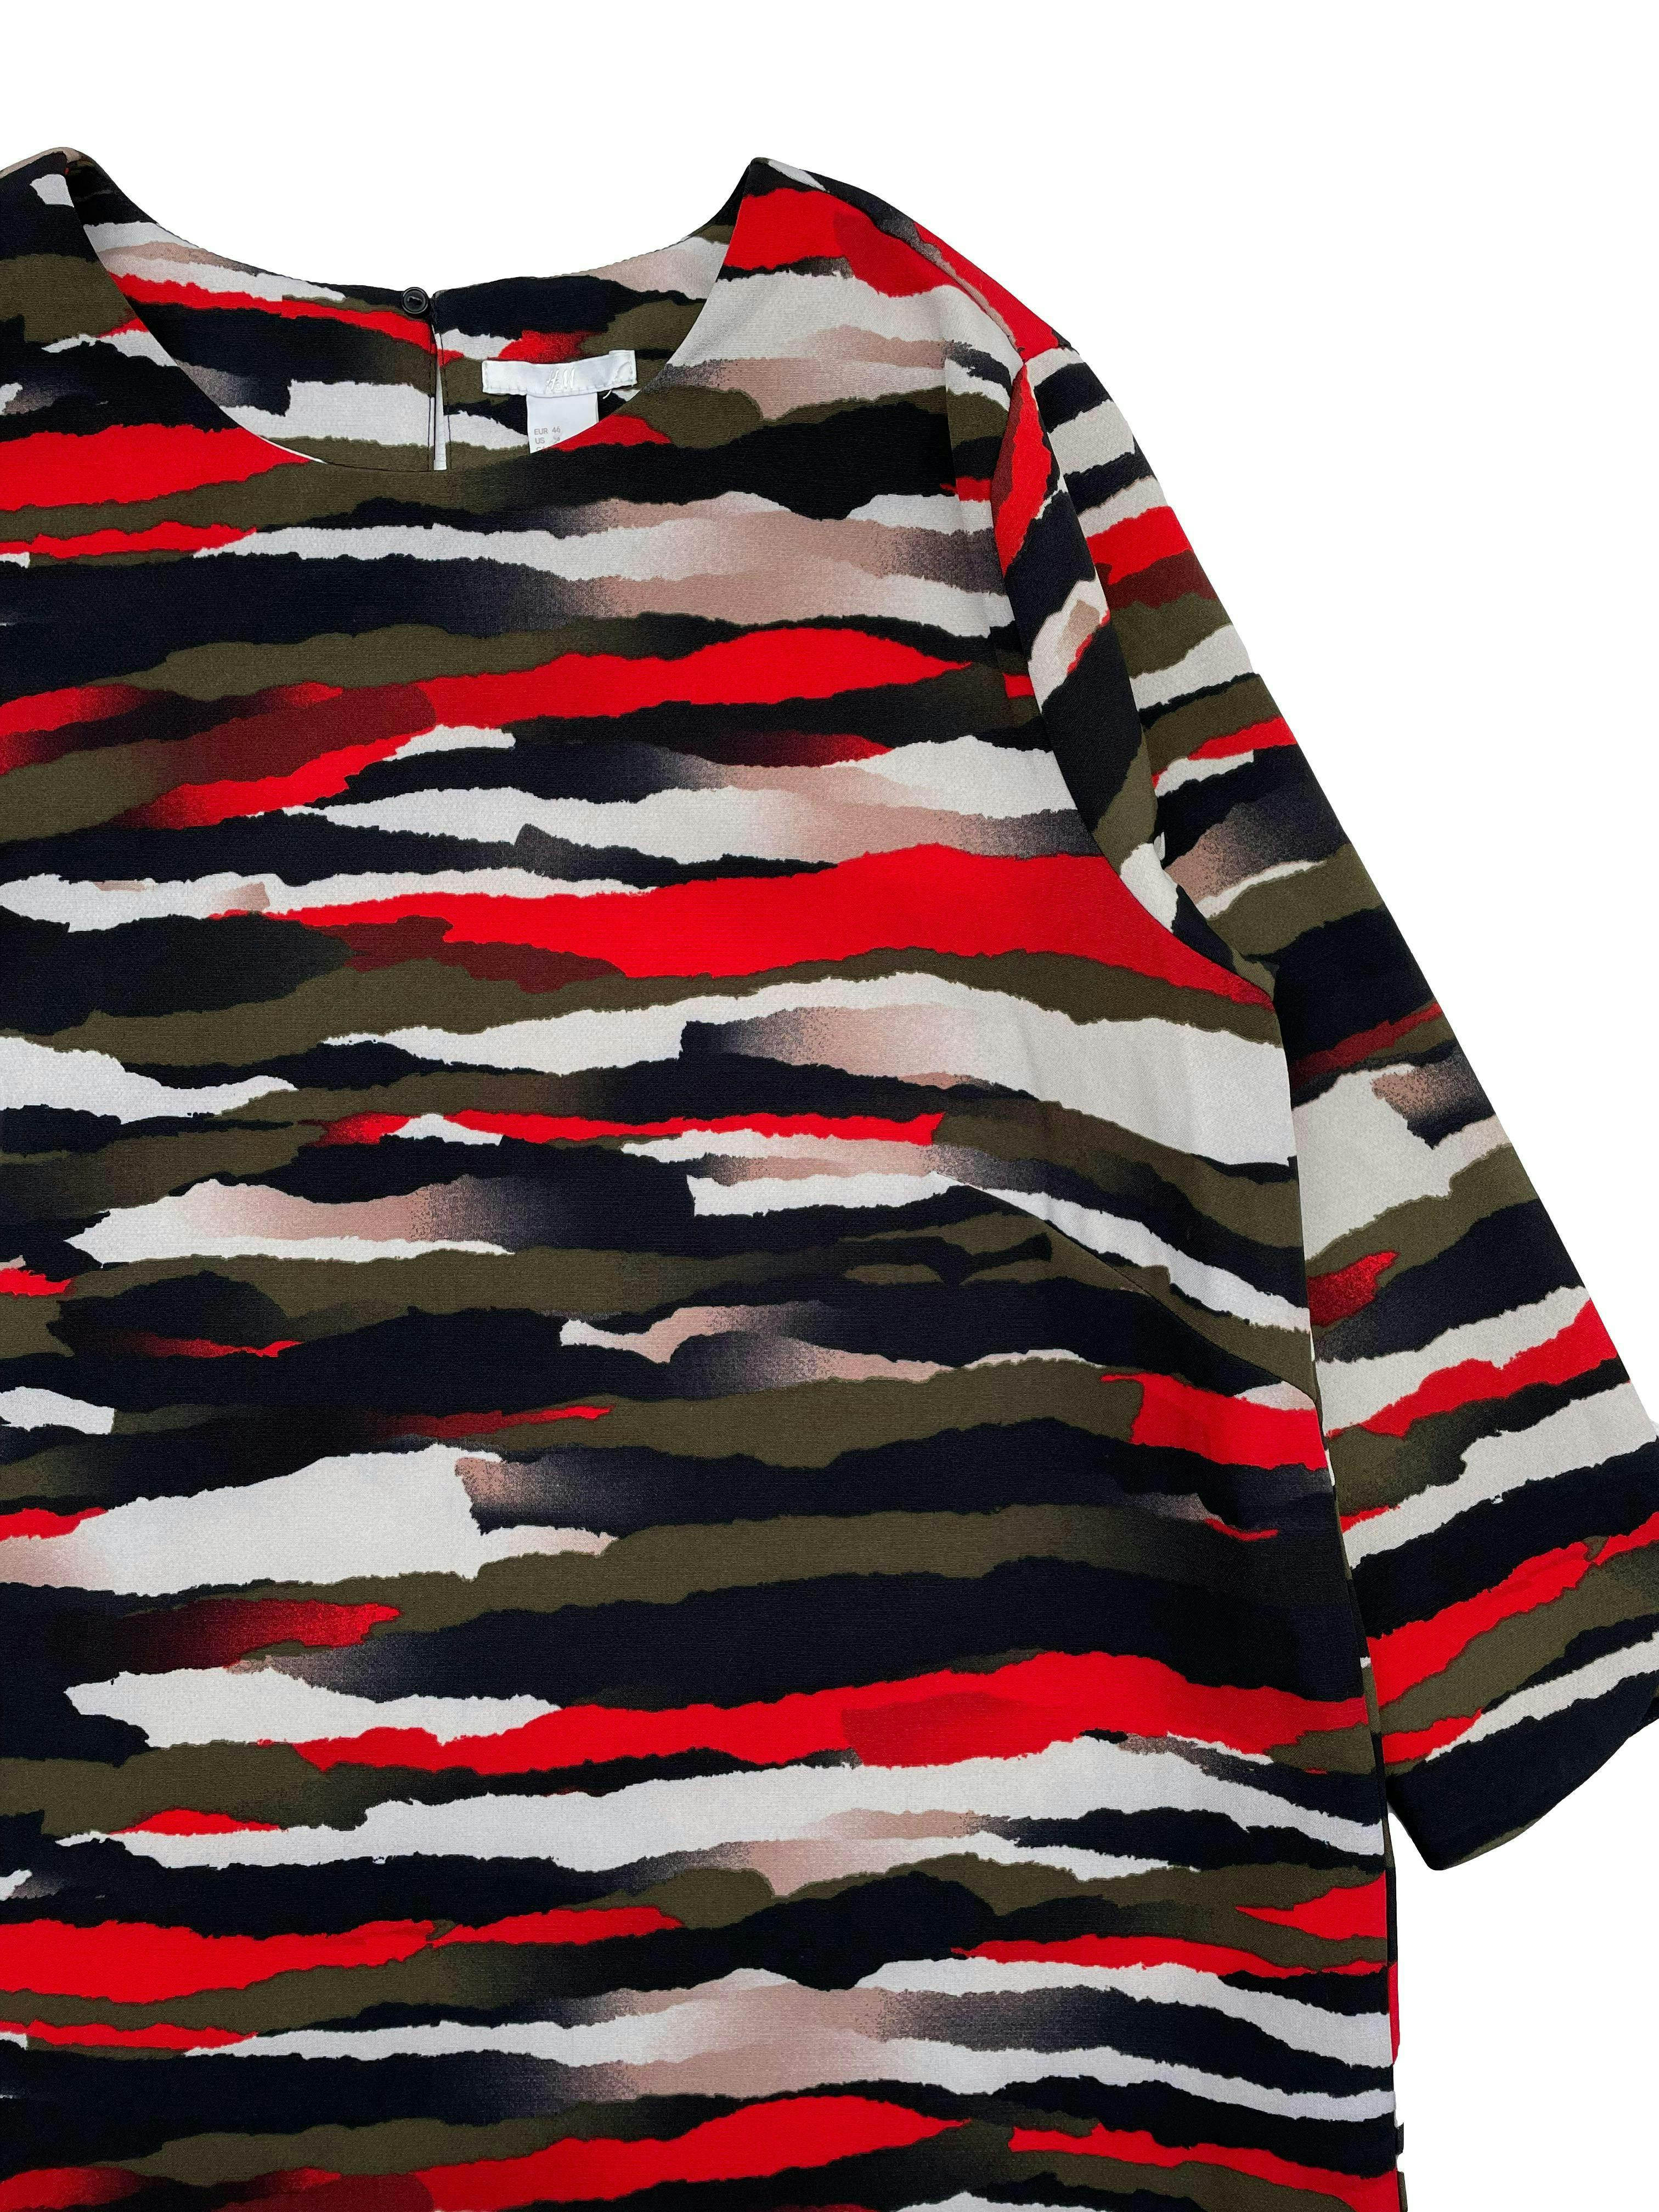 Vestido H&M abstracto en tonos rojos marrones y negros, corte recto, manga 3/4, botón posterior en el cuello. Busto: 108cm, Largo: 88cm. Nuevo con etiqueta